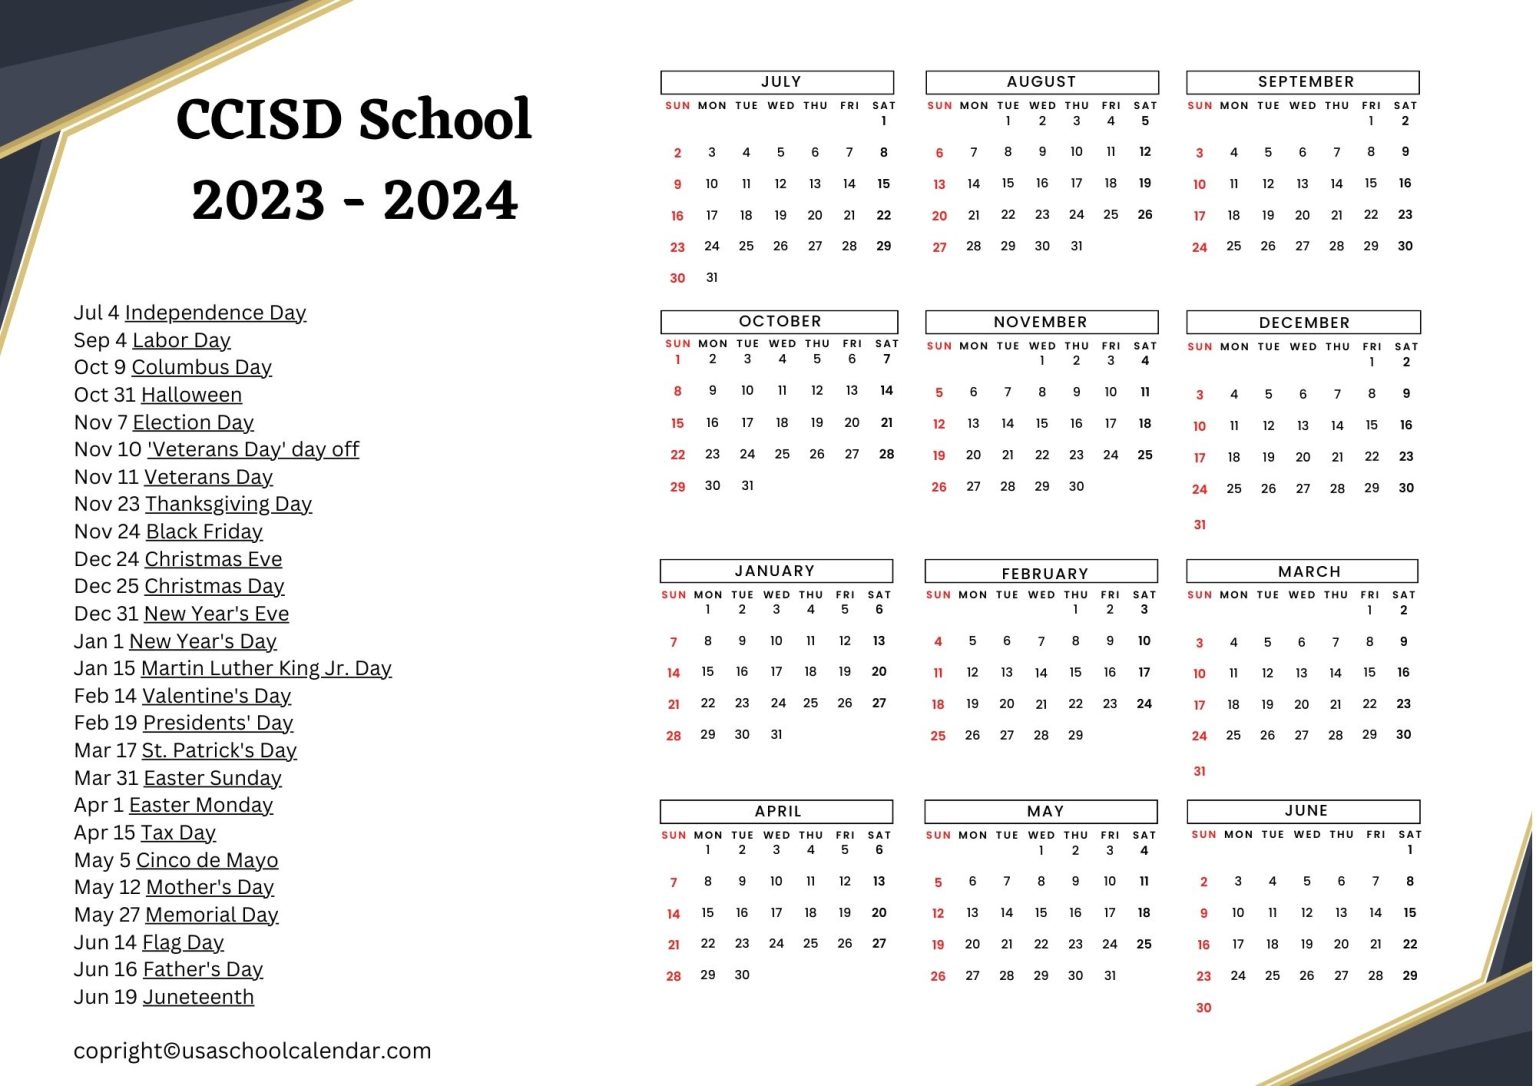 ccisd-school-calendar-holidays-2023-2024-clear-creek-isd